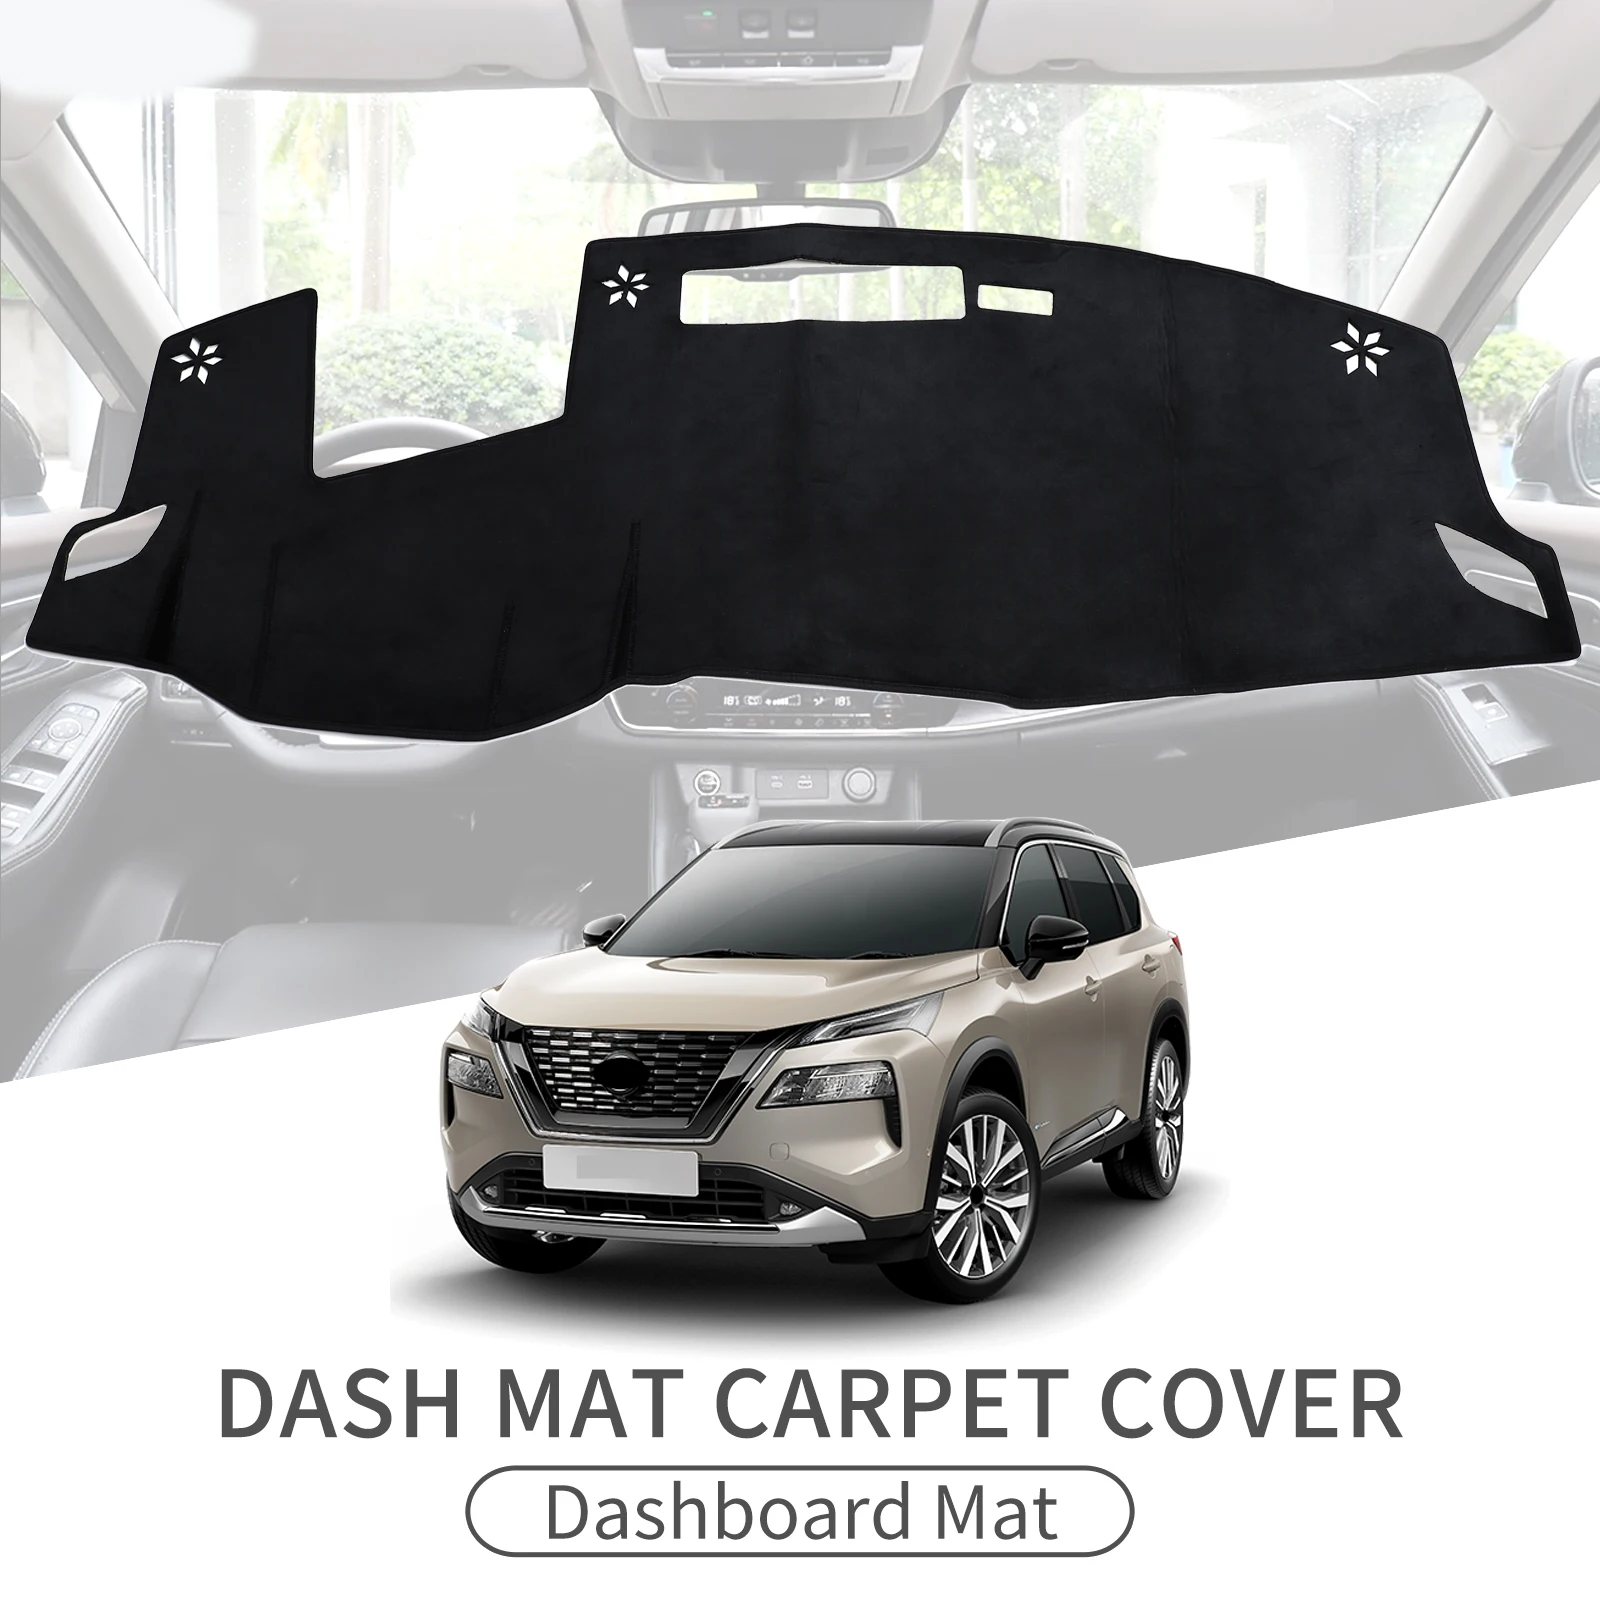 

Smabee Anti-Slip Dashboard Cover Pad for Nissan X-trail Rogue 2021 - 2023 Dashmat Dash Mat Sunshade Carpet Car Accessories